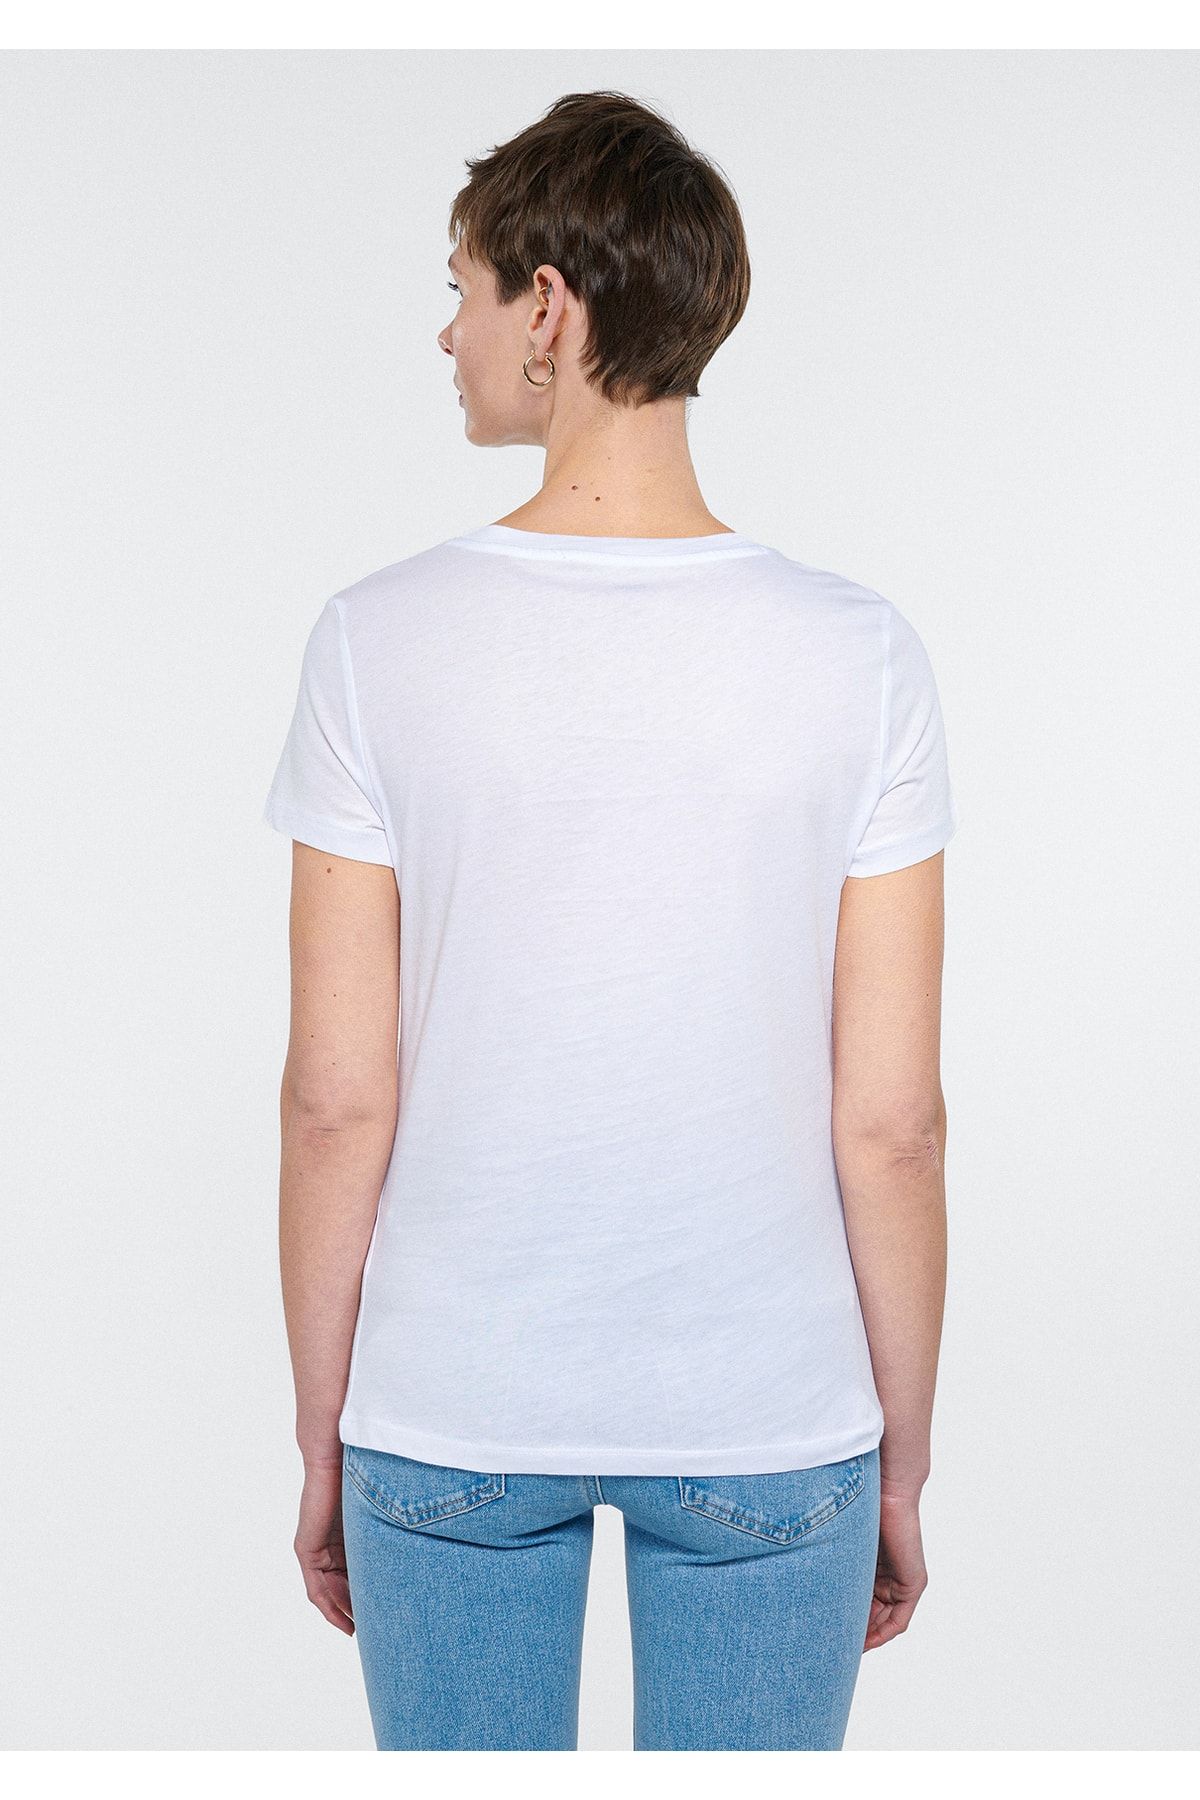 Mavi تی شرت سفید چاپ شده مناسب / برش معمولی 1611326-620